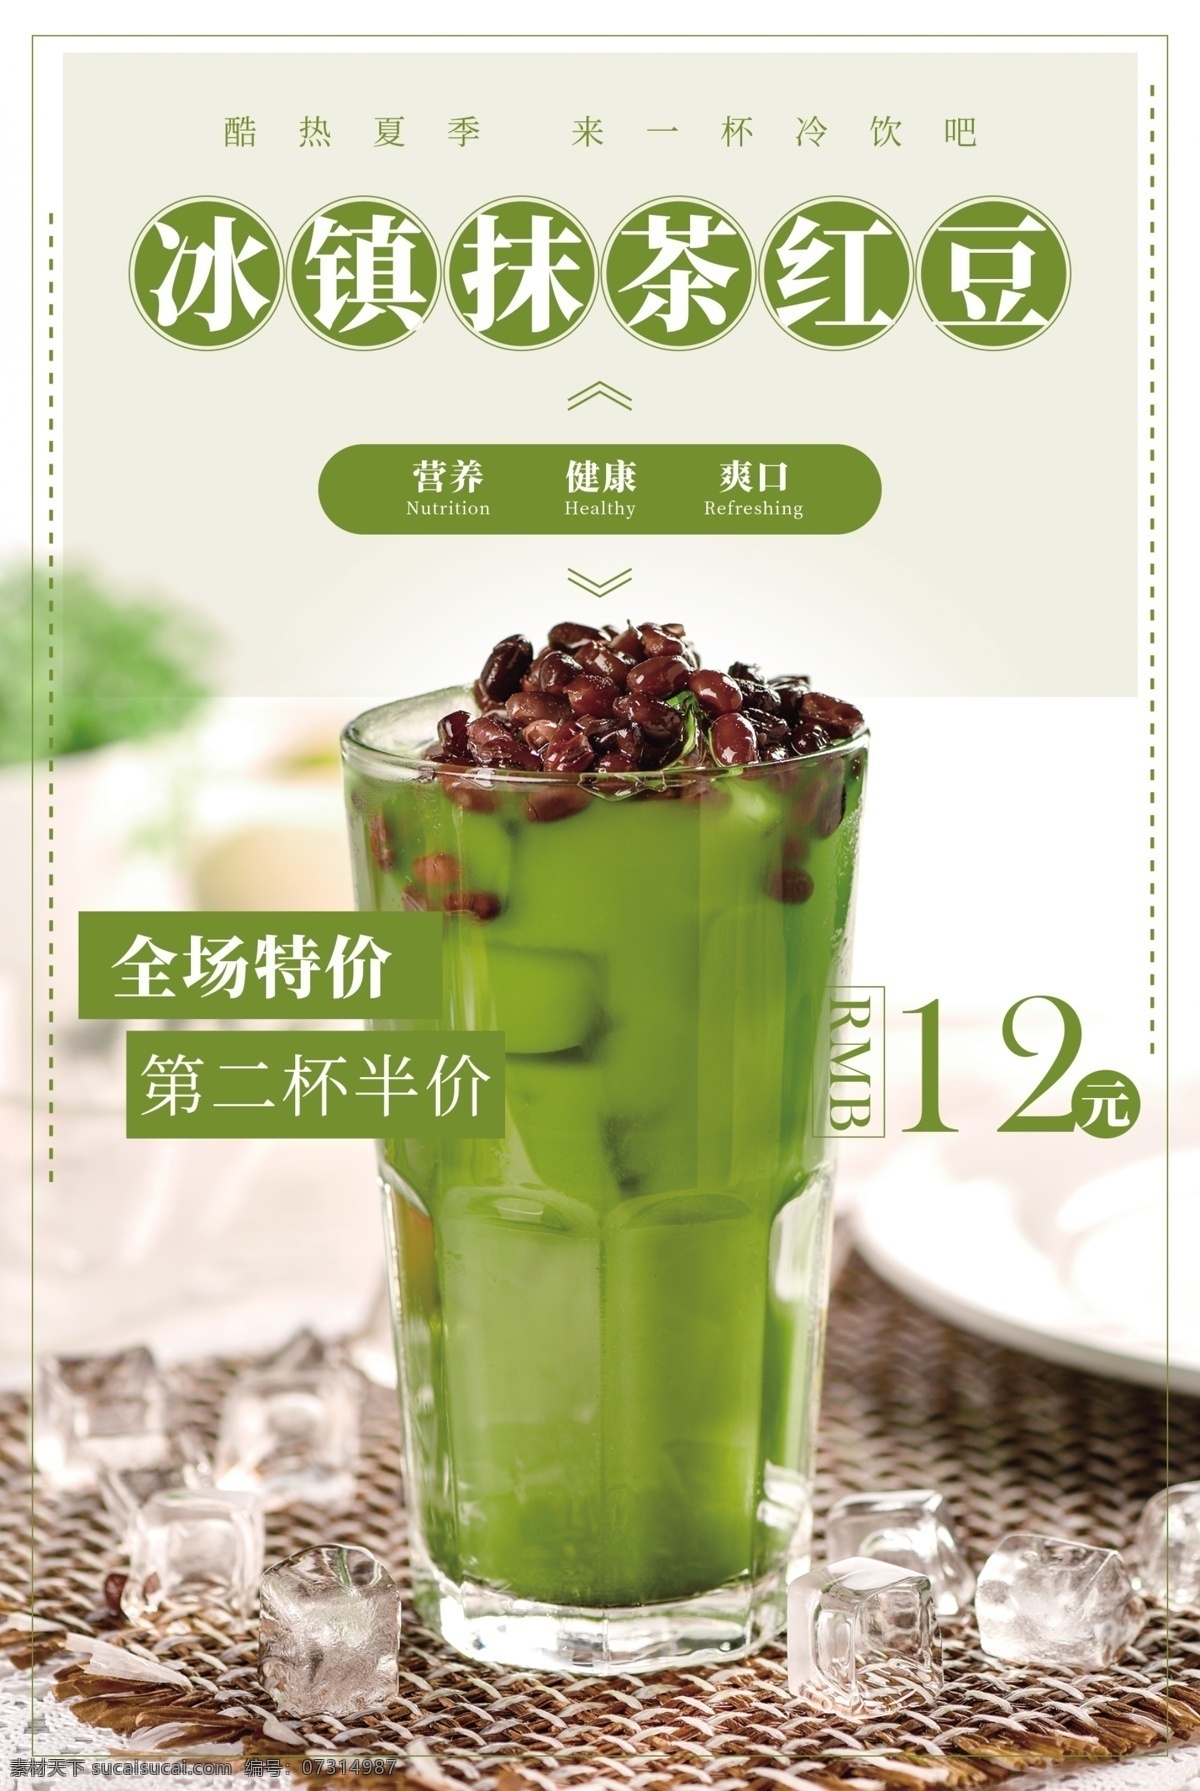 抹 茶 红豆 饮料 活动 宣传海报 素材图片 抹茶红豆 宣传 海报 饮品 甜品 类